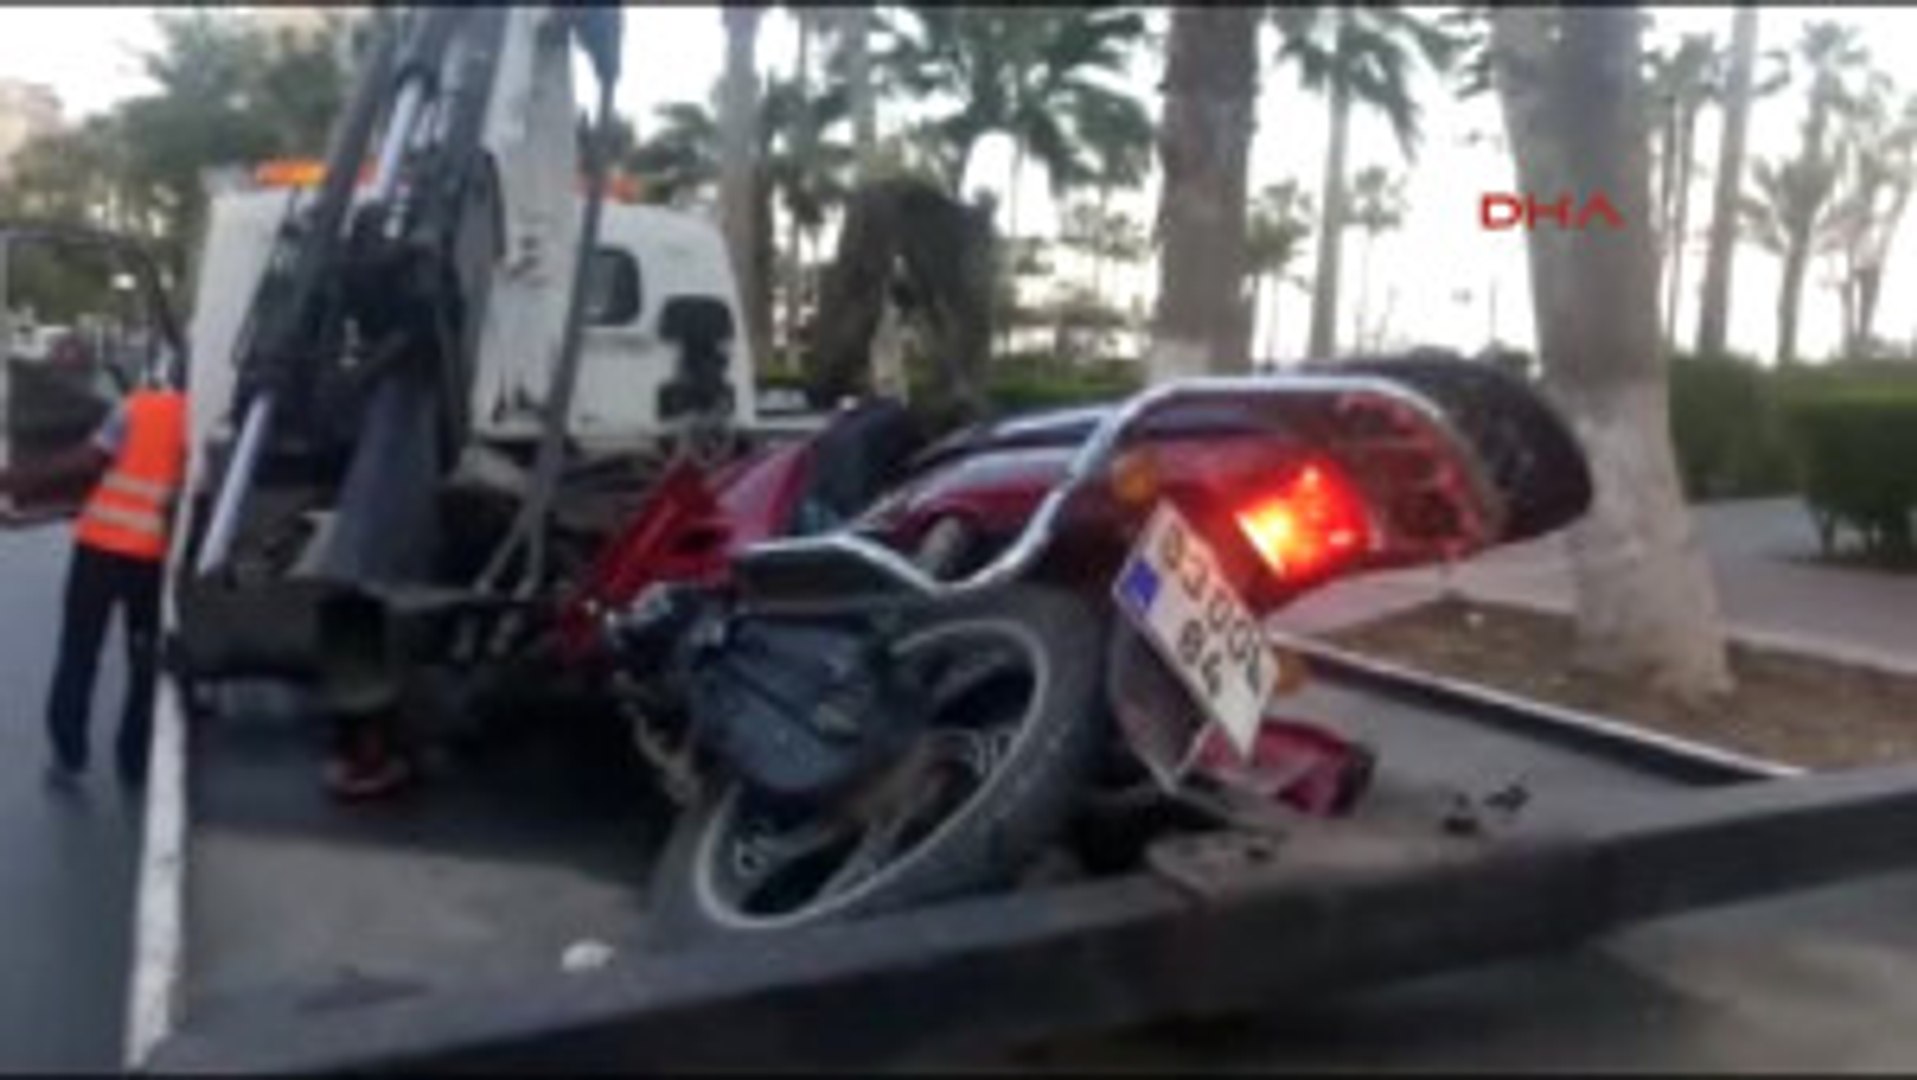 Mersin Motosiklet Yayaya Çarptı: 1 Ölü, 1 Yaralı - Dailymotion Video